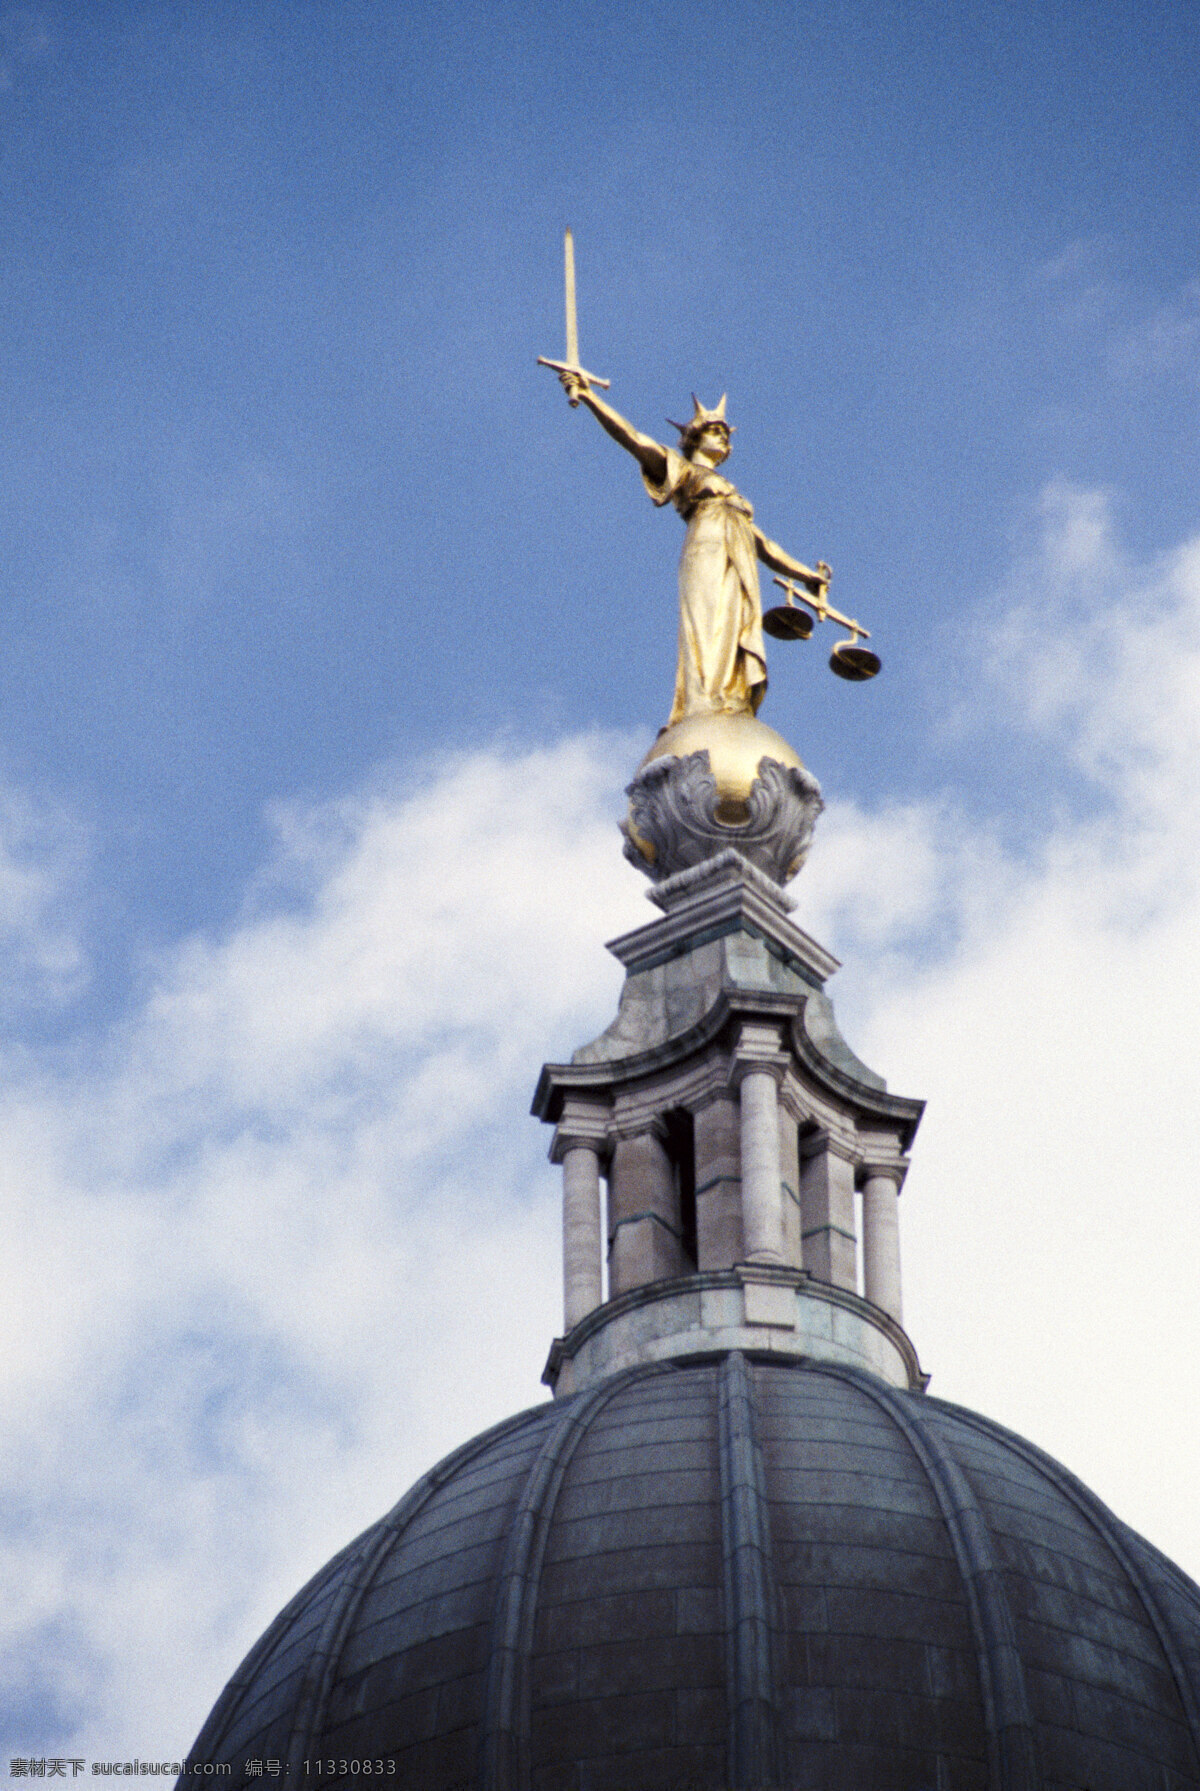 胜利 女神 雕像 城市 城市建筑 城市标识 英国 伦敦 现代城市 胜利女神 利剑 天秤 公平 城市风光 环境家居